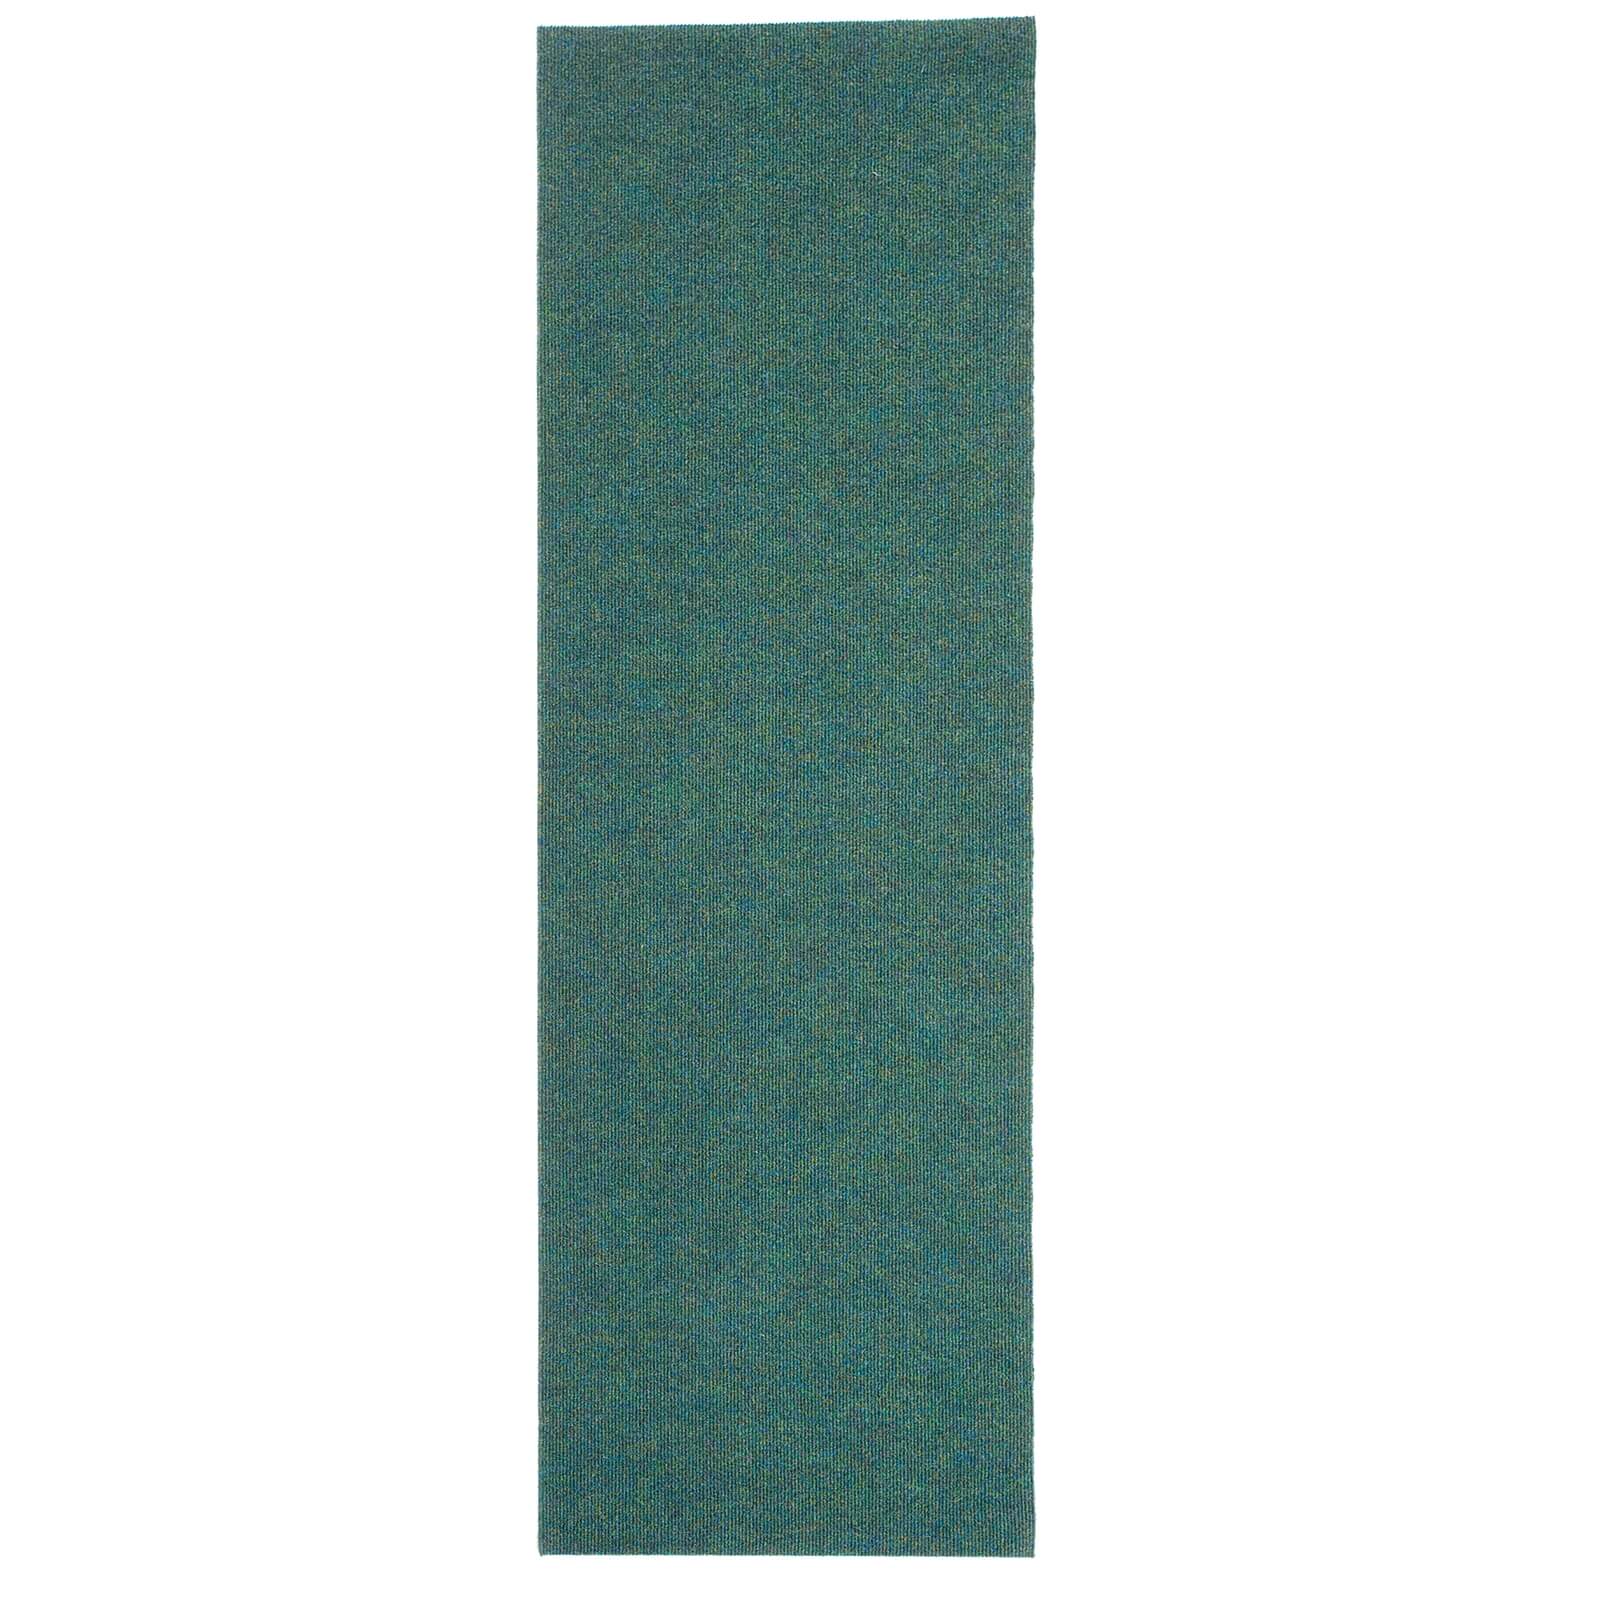 Ribbed Runner - Green - 66x183cm